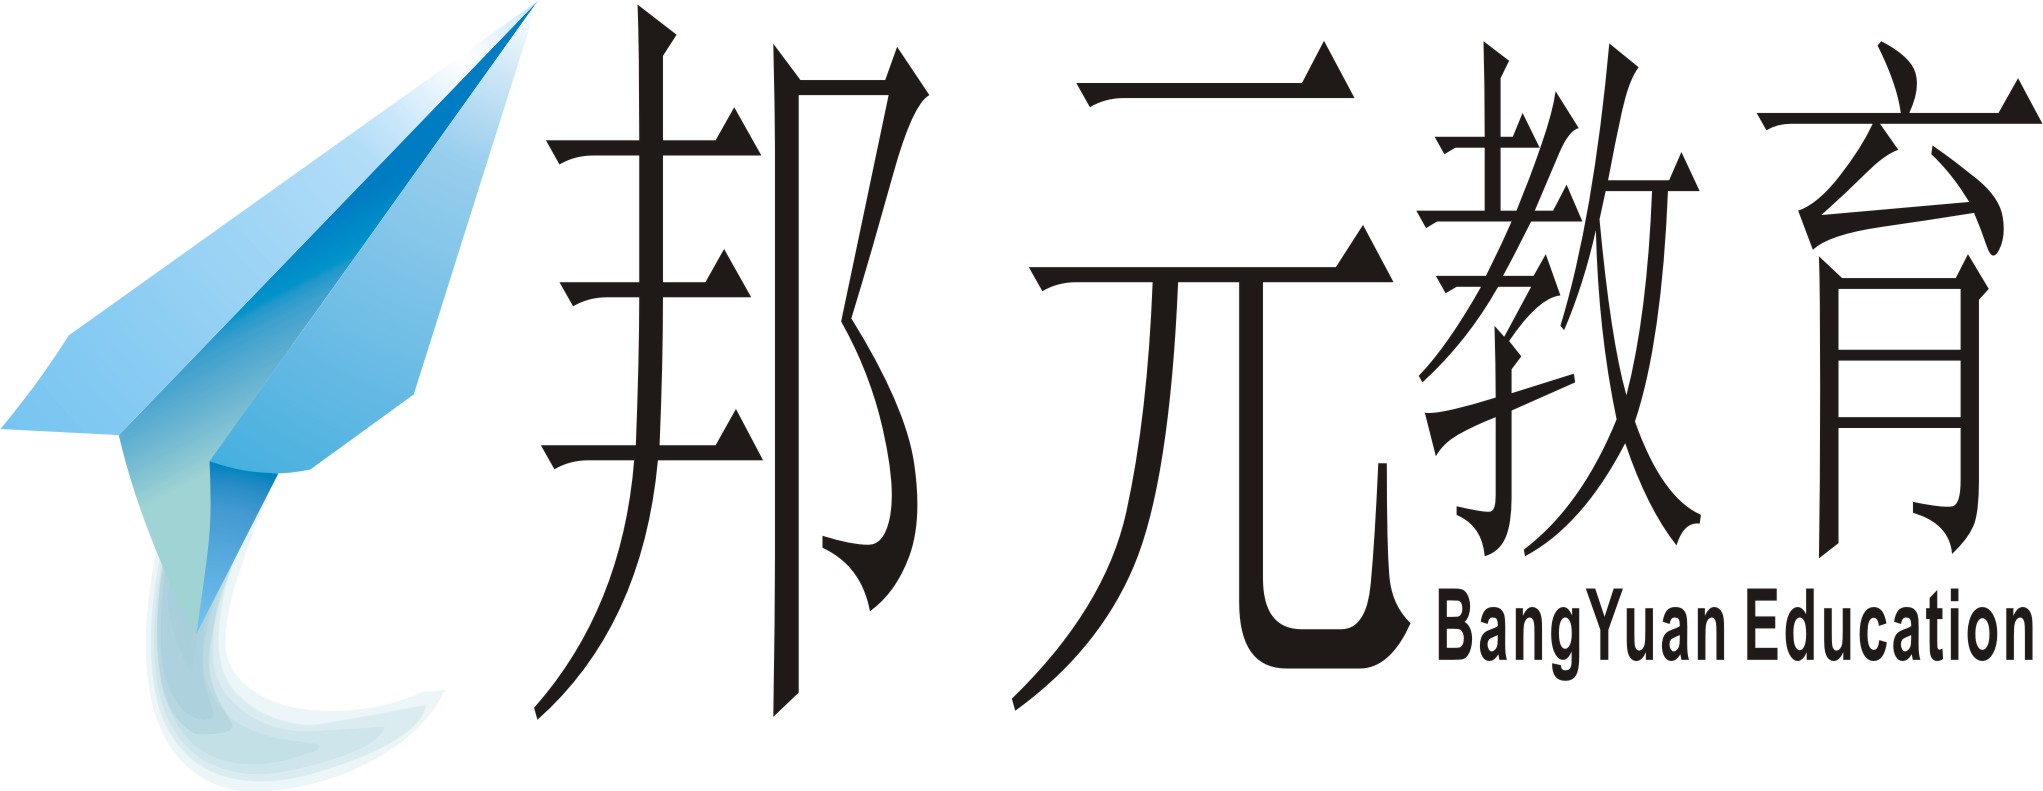 苏州邦元教育信息有限公司logo